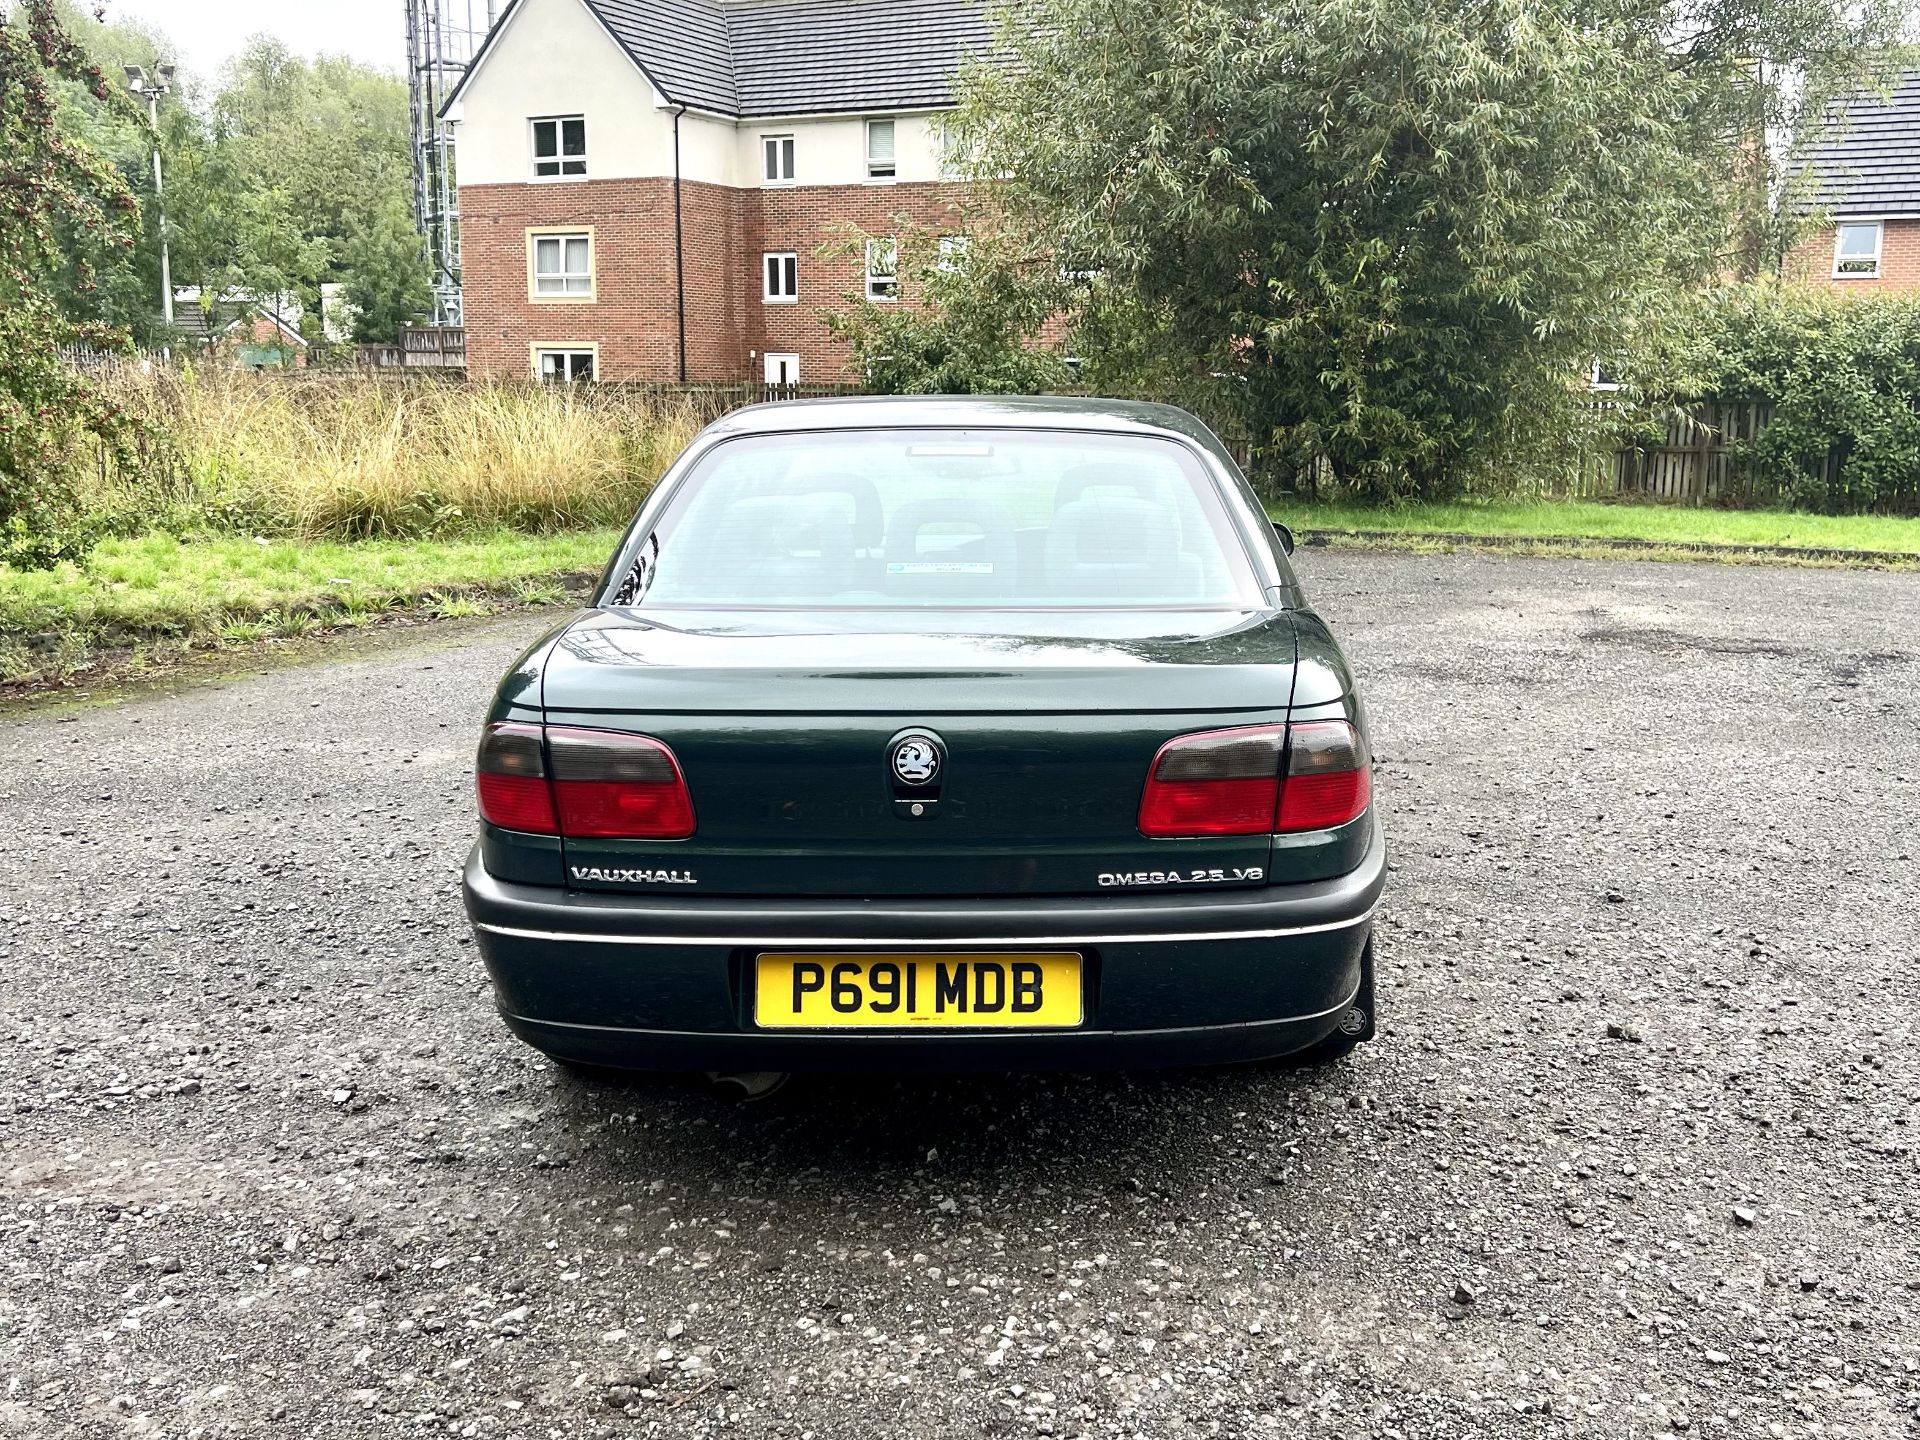 Vauxhall Omega - Image 6 of 34